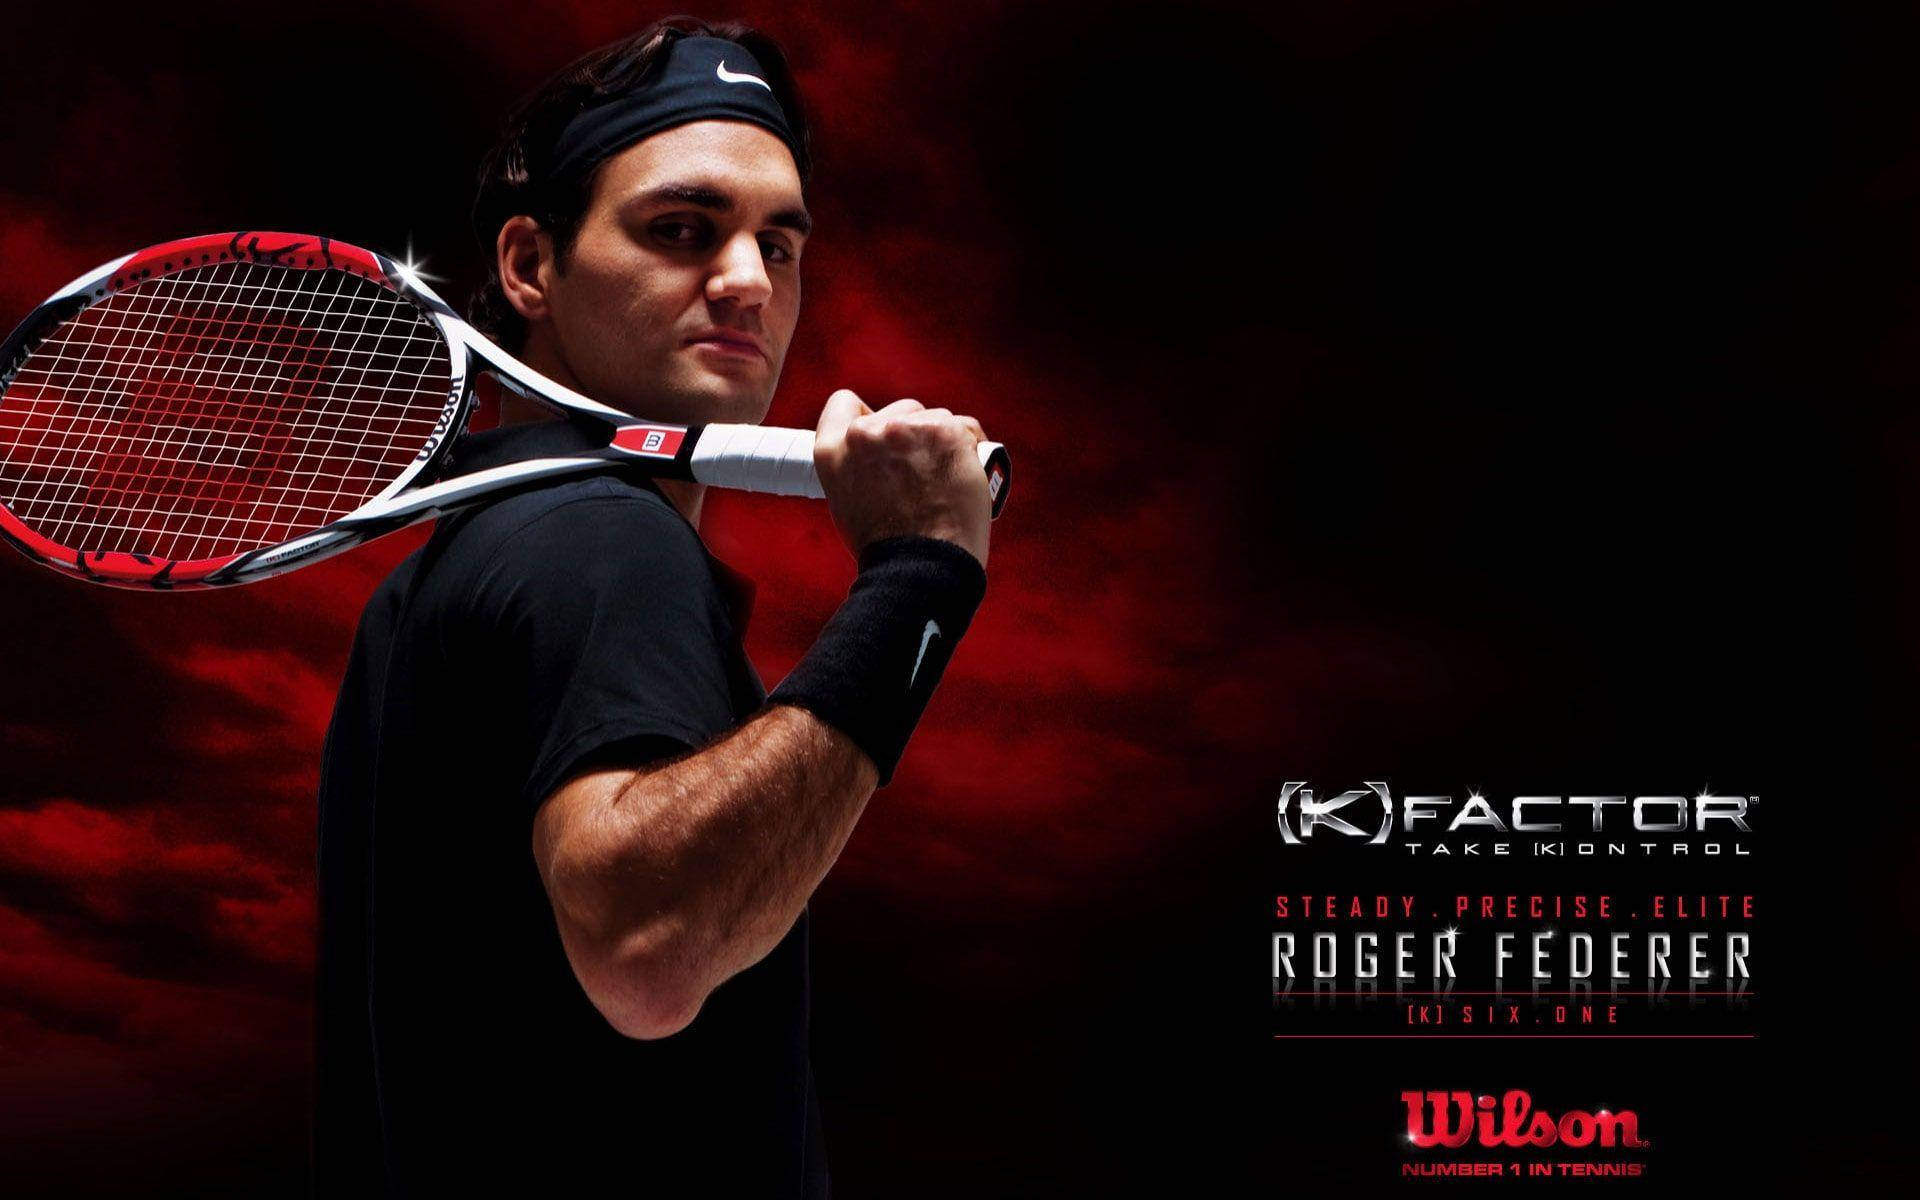 Roger Federer Wilson Factor Tennis Background